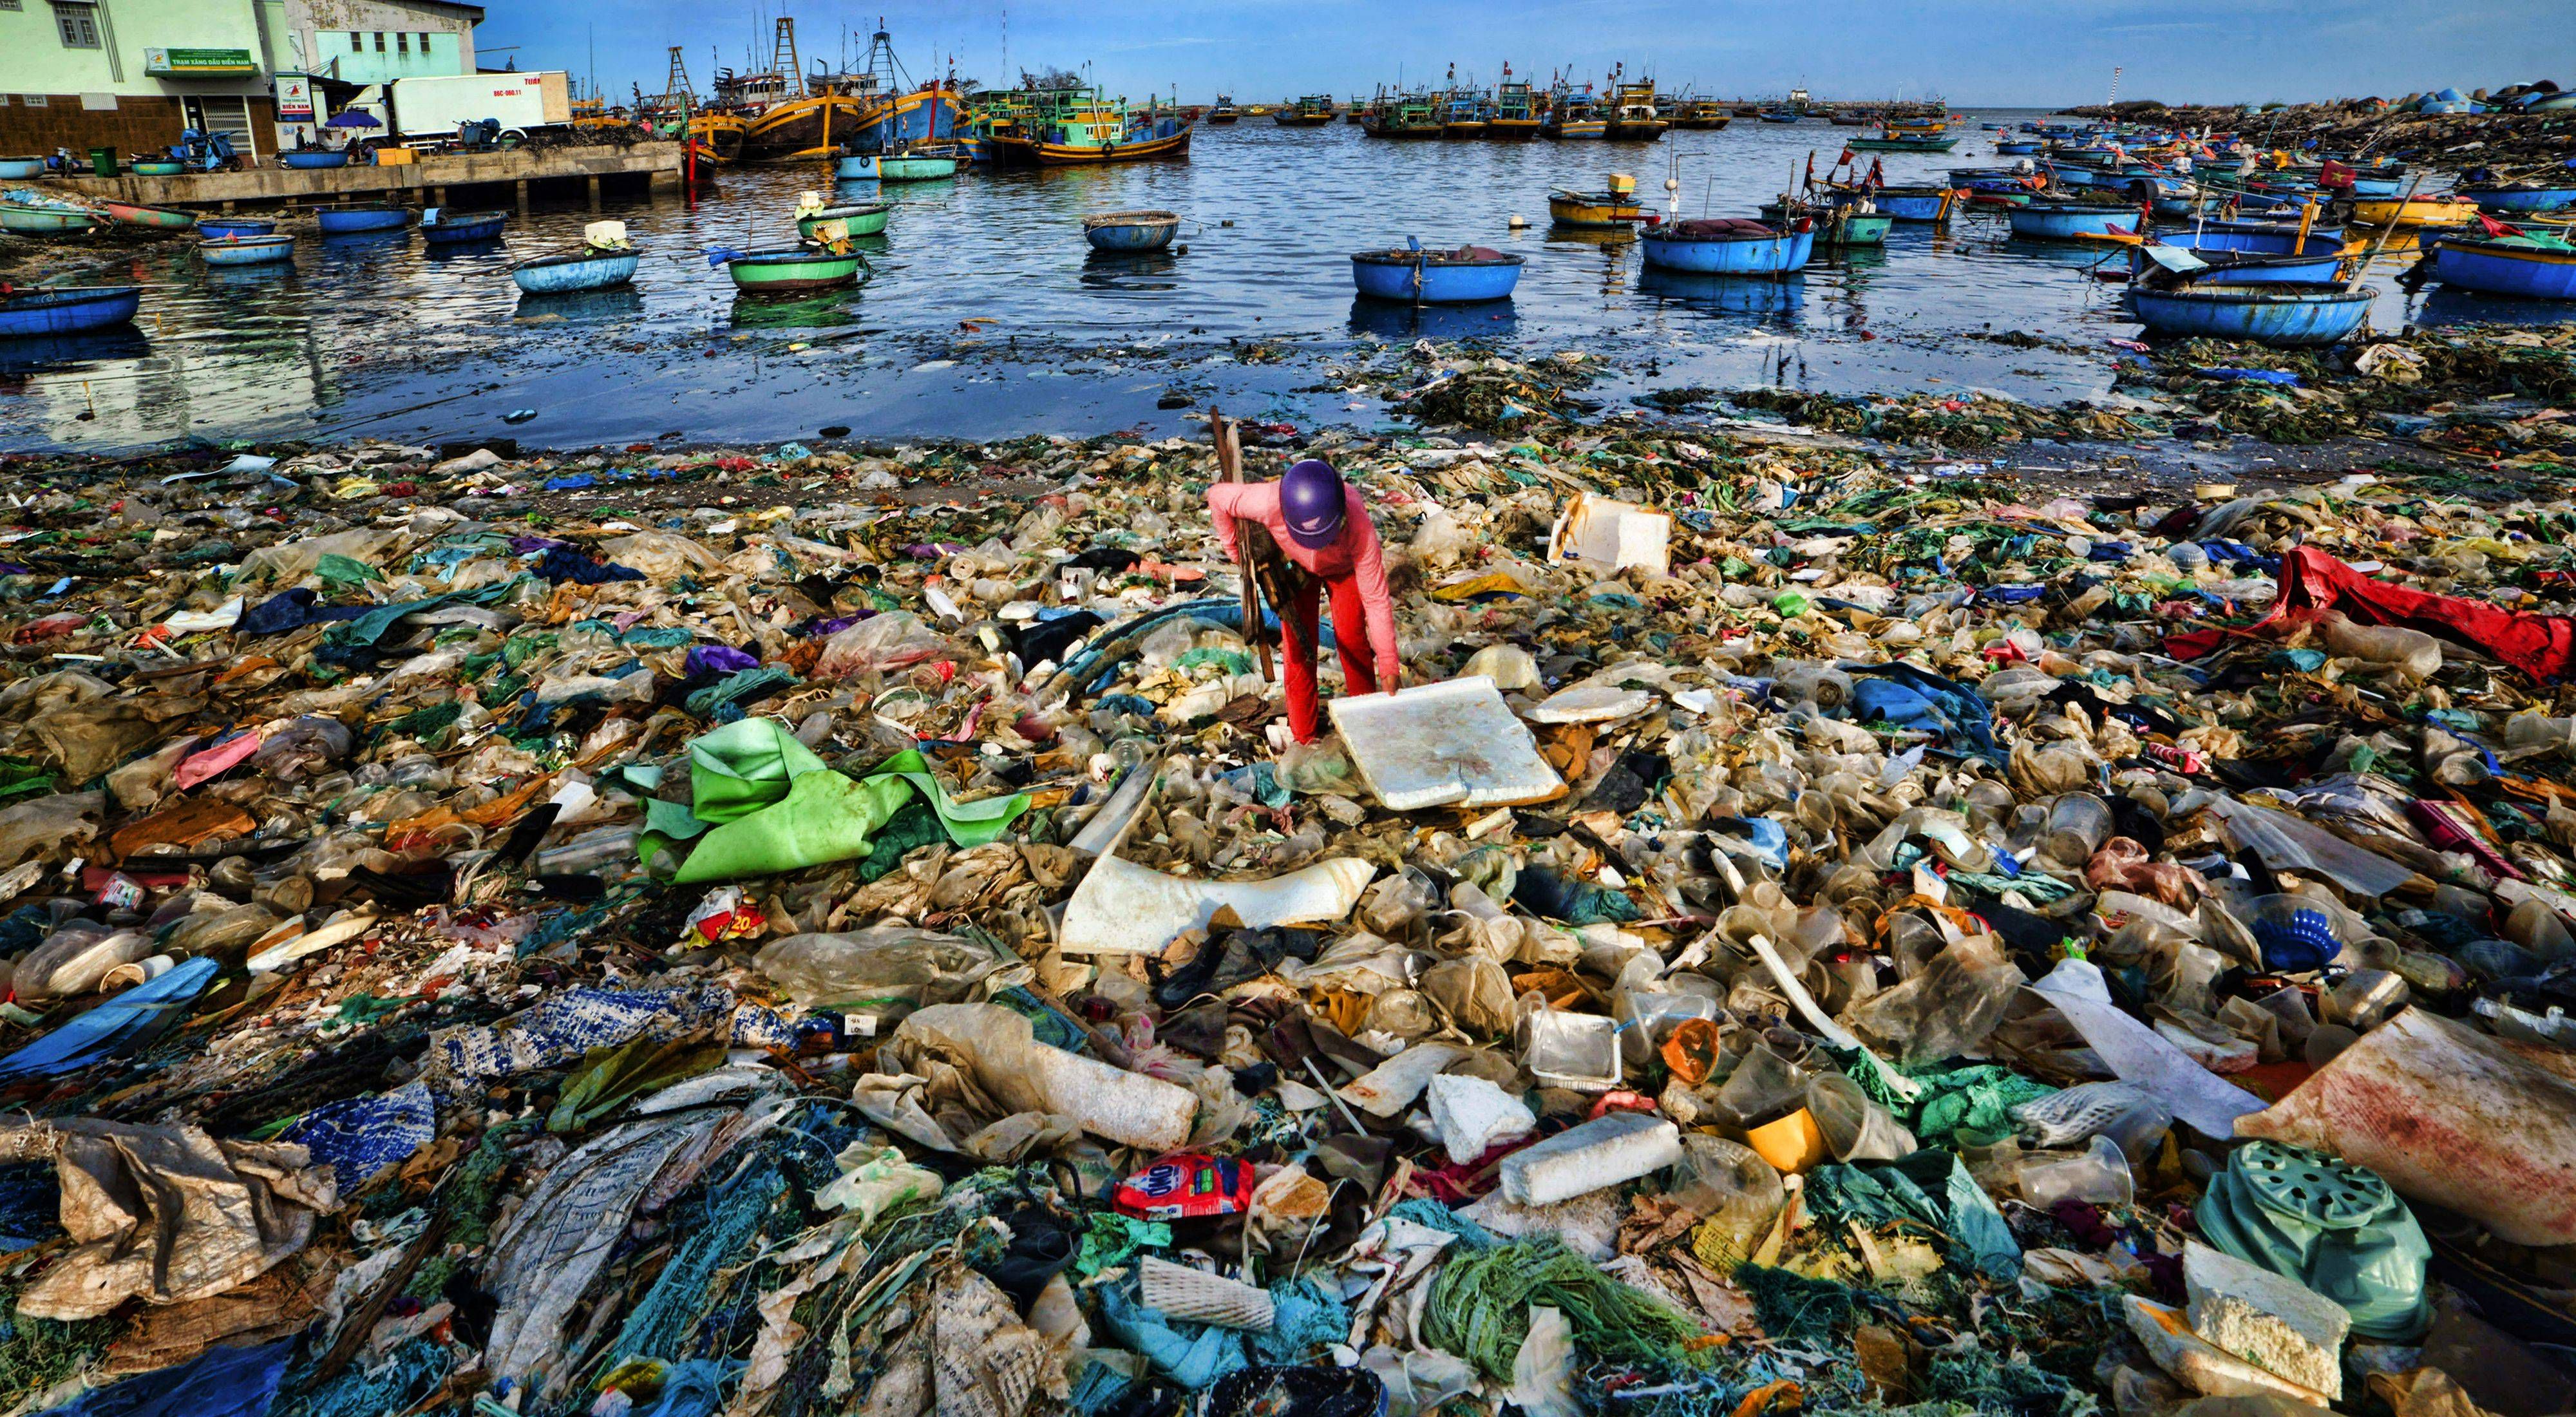 Costa de puerto invadido por residuos plásticos.